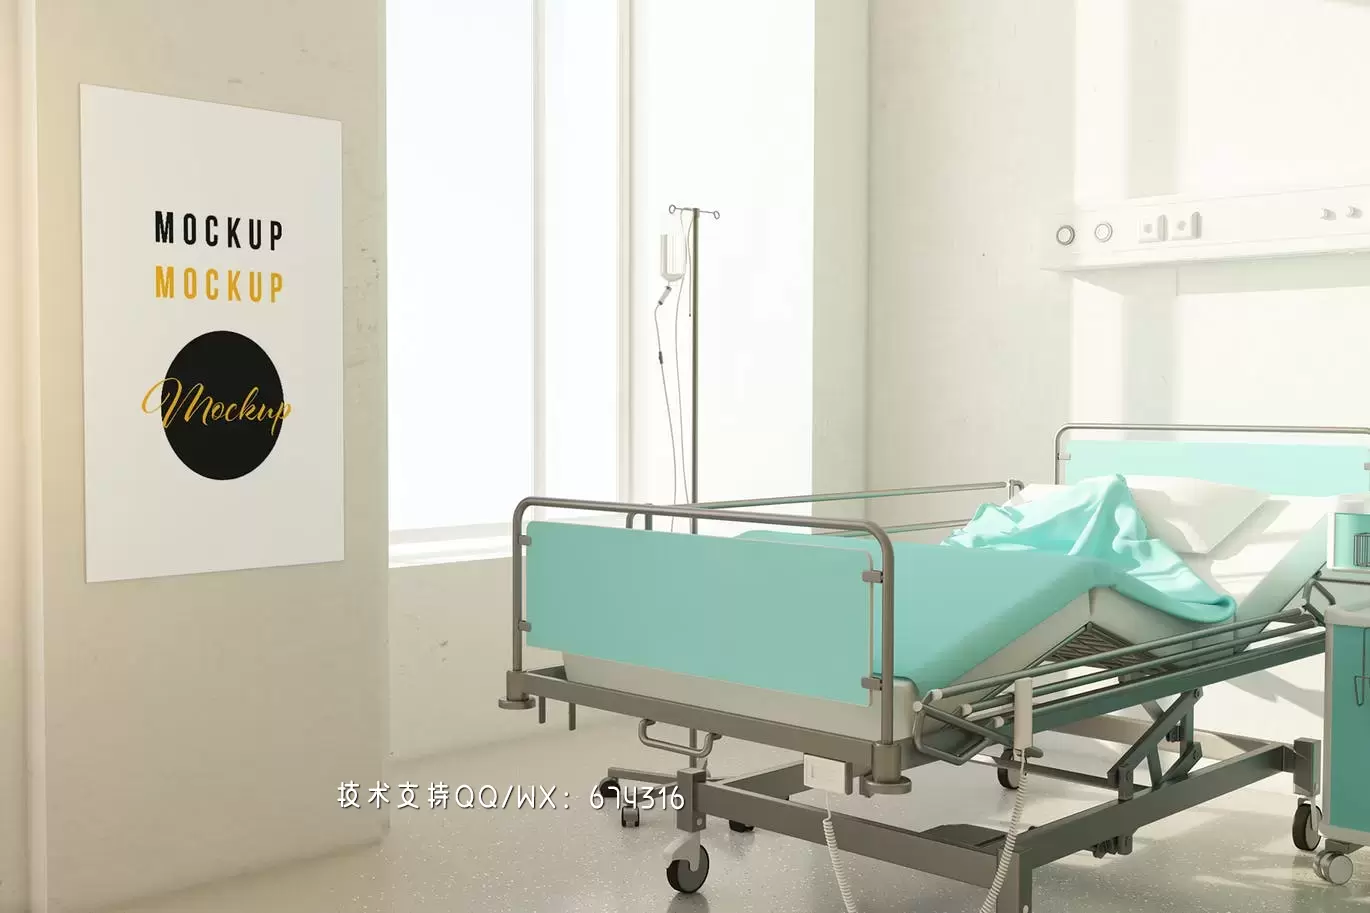 挂在医院房间模型上的海报样机 (PSD)免费下载